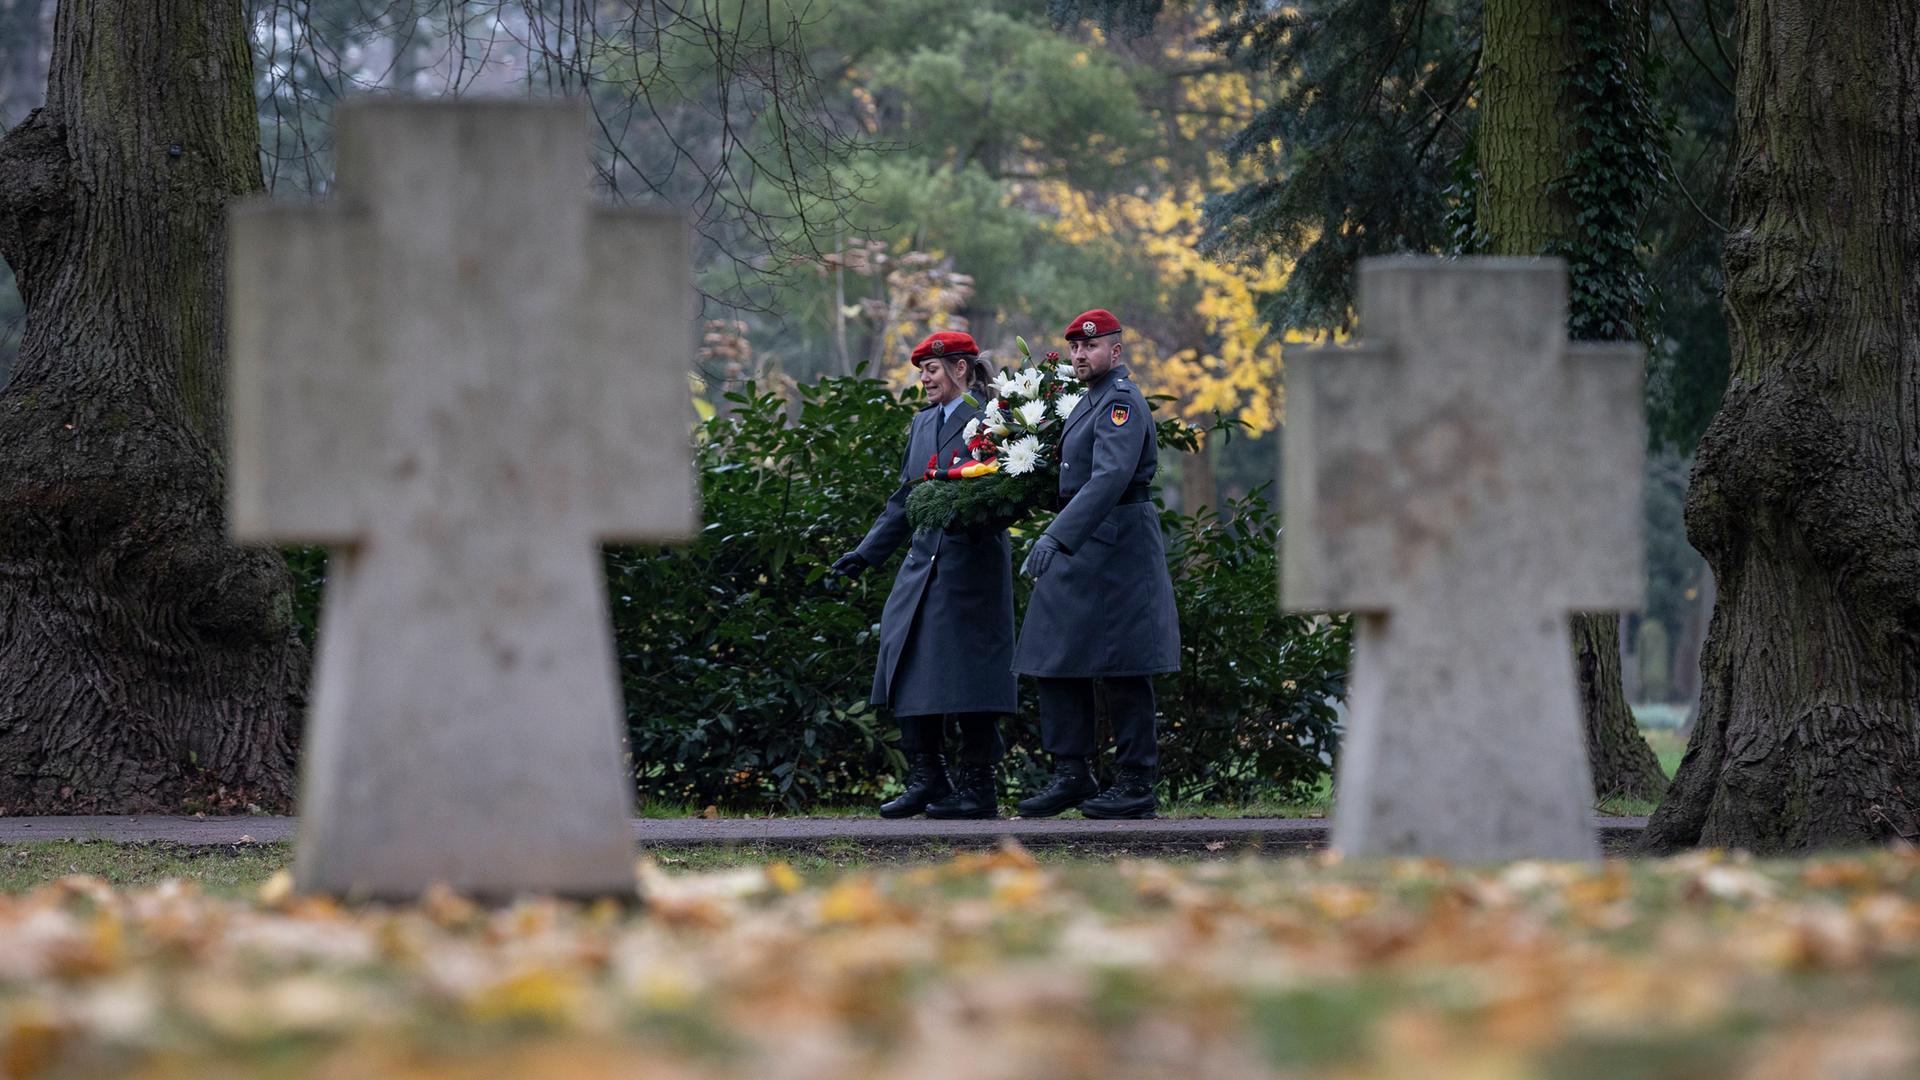 Ein Friedhof im Herbst: Im Fokus sind ein Soldat und eine Soldatin in Uniform, die zum Volkstrauertag einen Kranz tragen. Im Vordergrund unscharf zwei Grabkreuze und Rasen mit Laub.